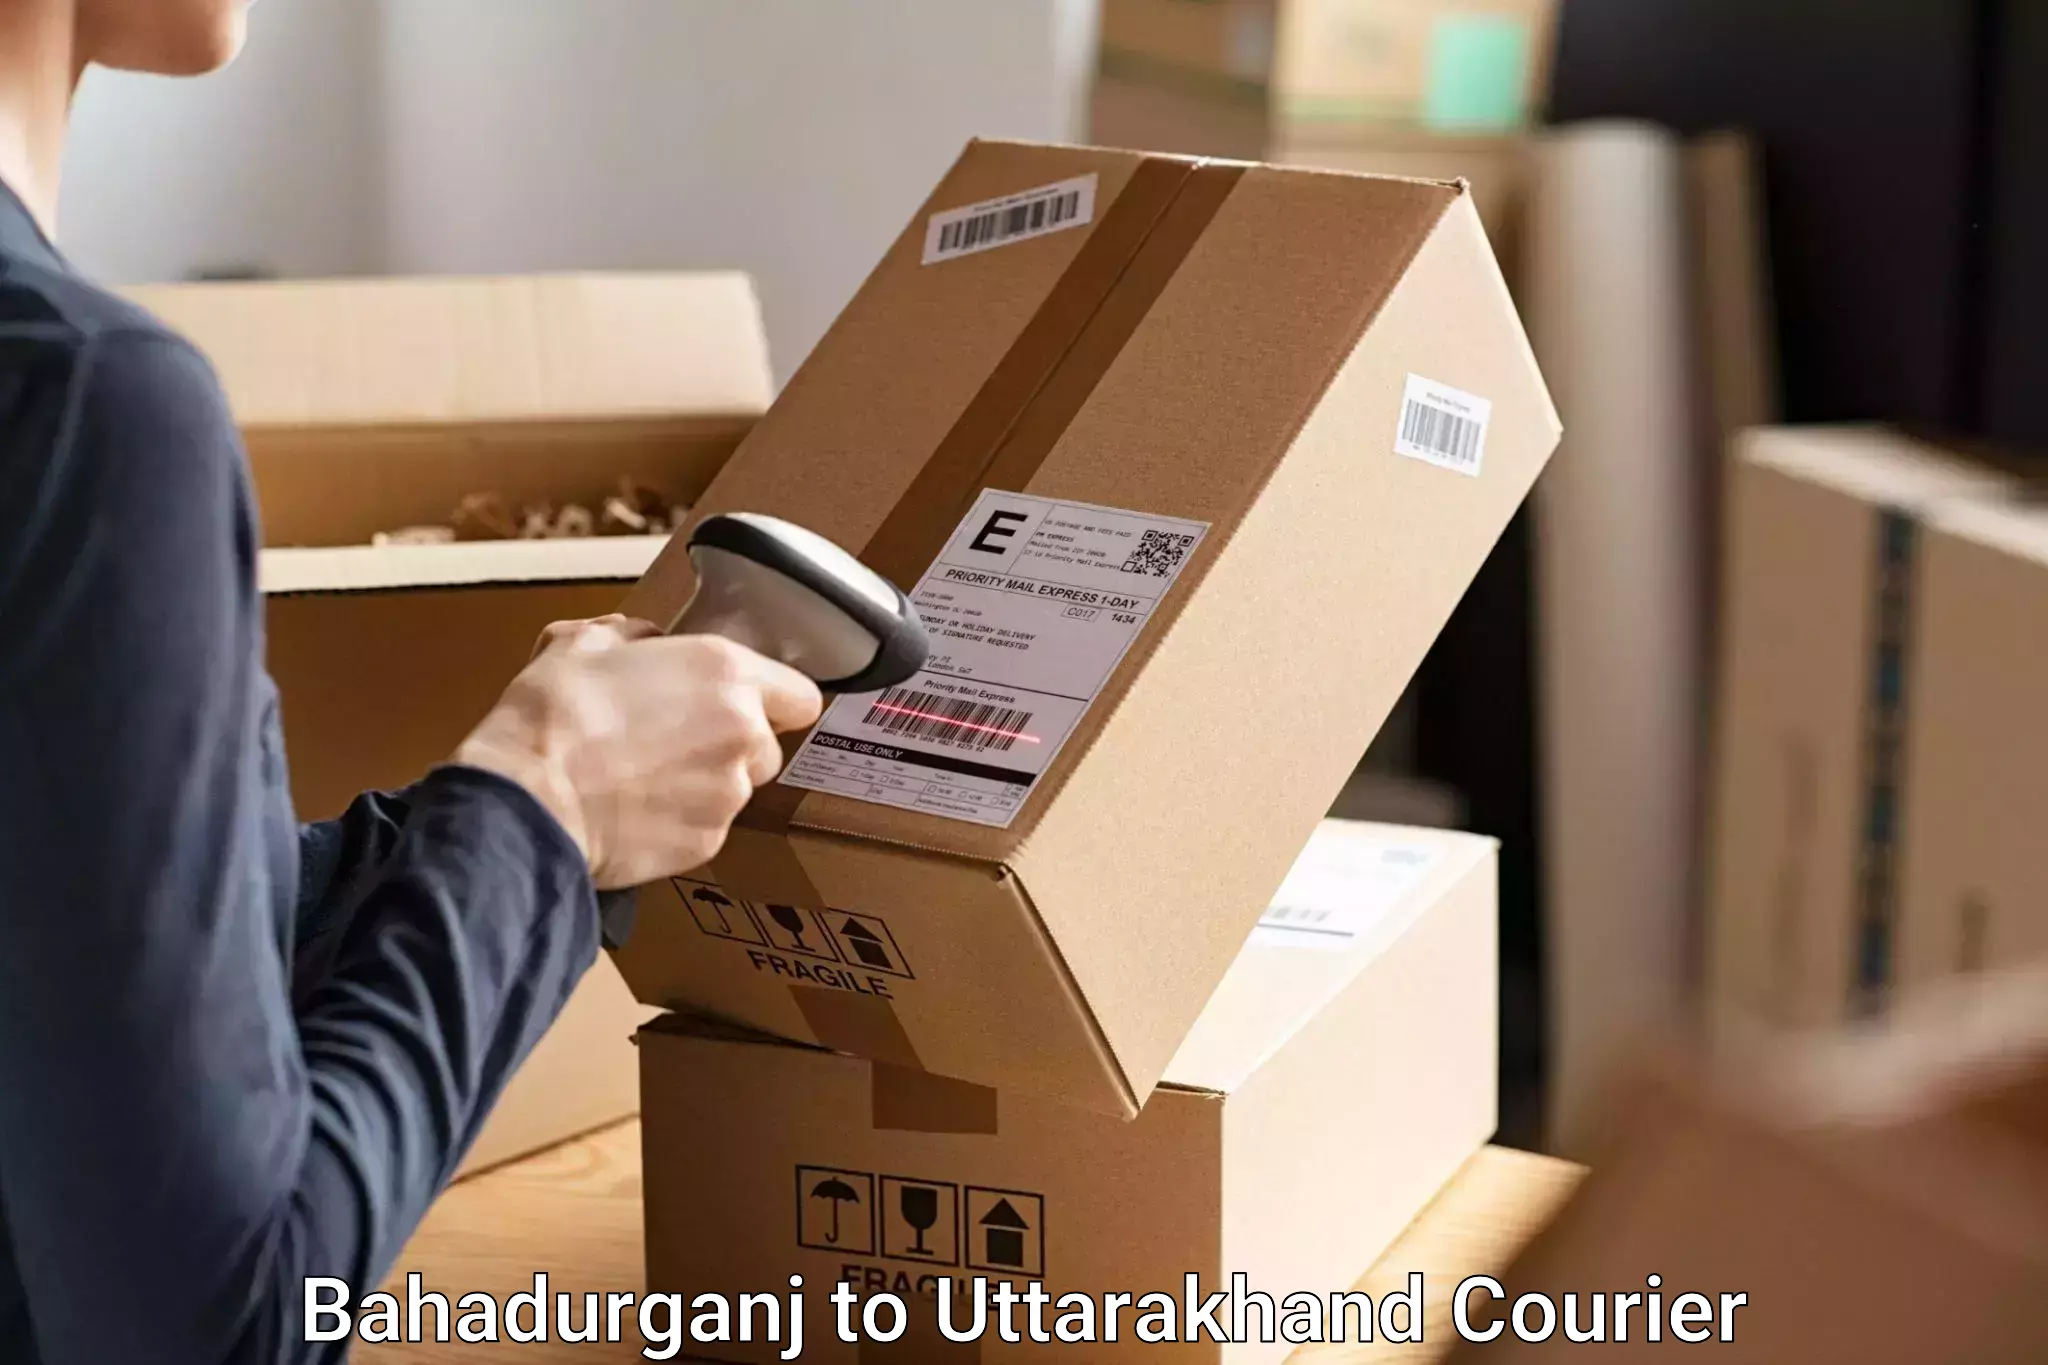 Baggage shipping service Bahadurganj to IIT Roorkee